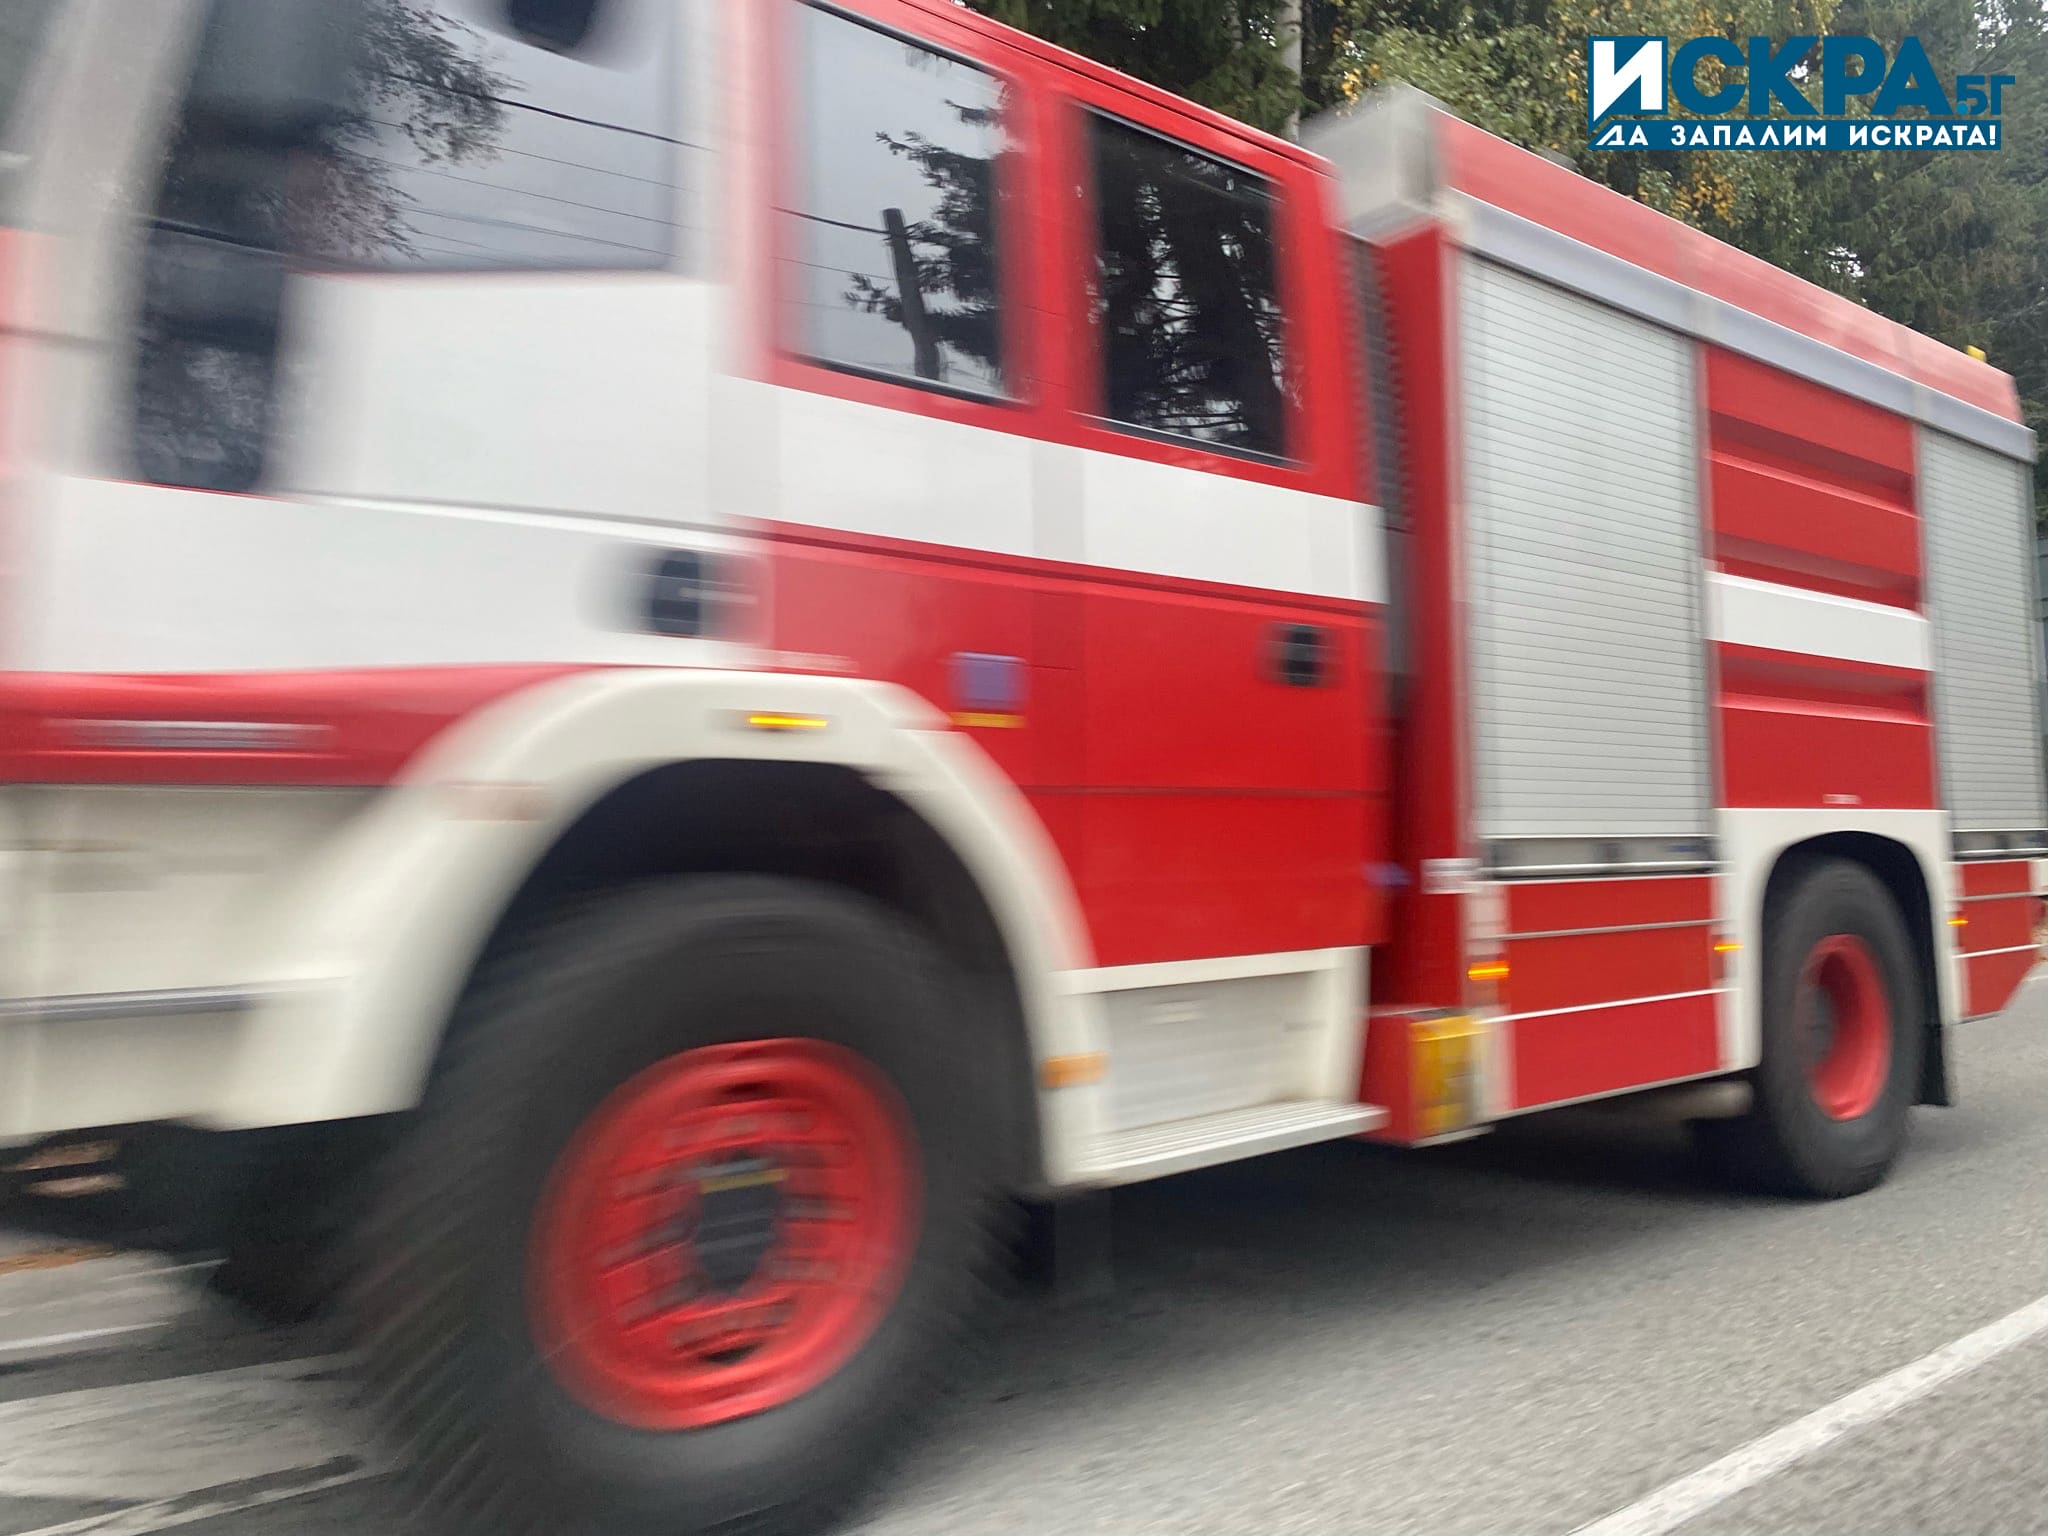 37 годишен мъж е пострадал при пожар в къща в София